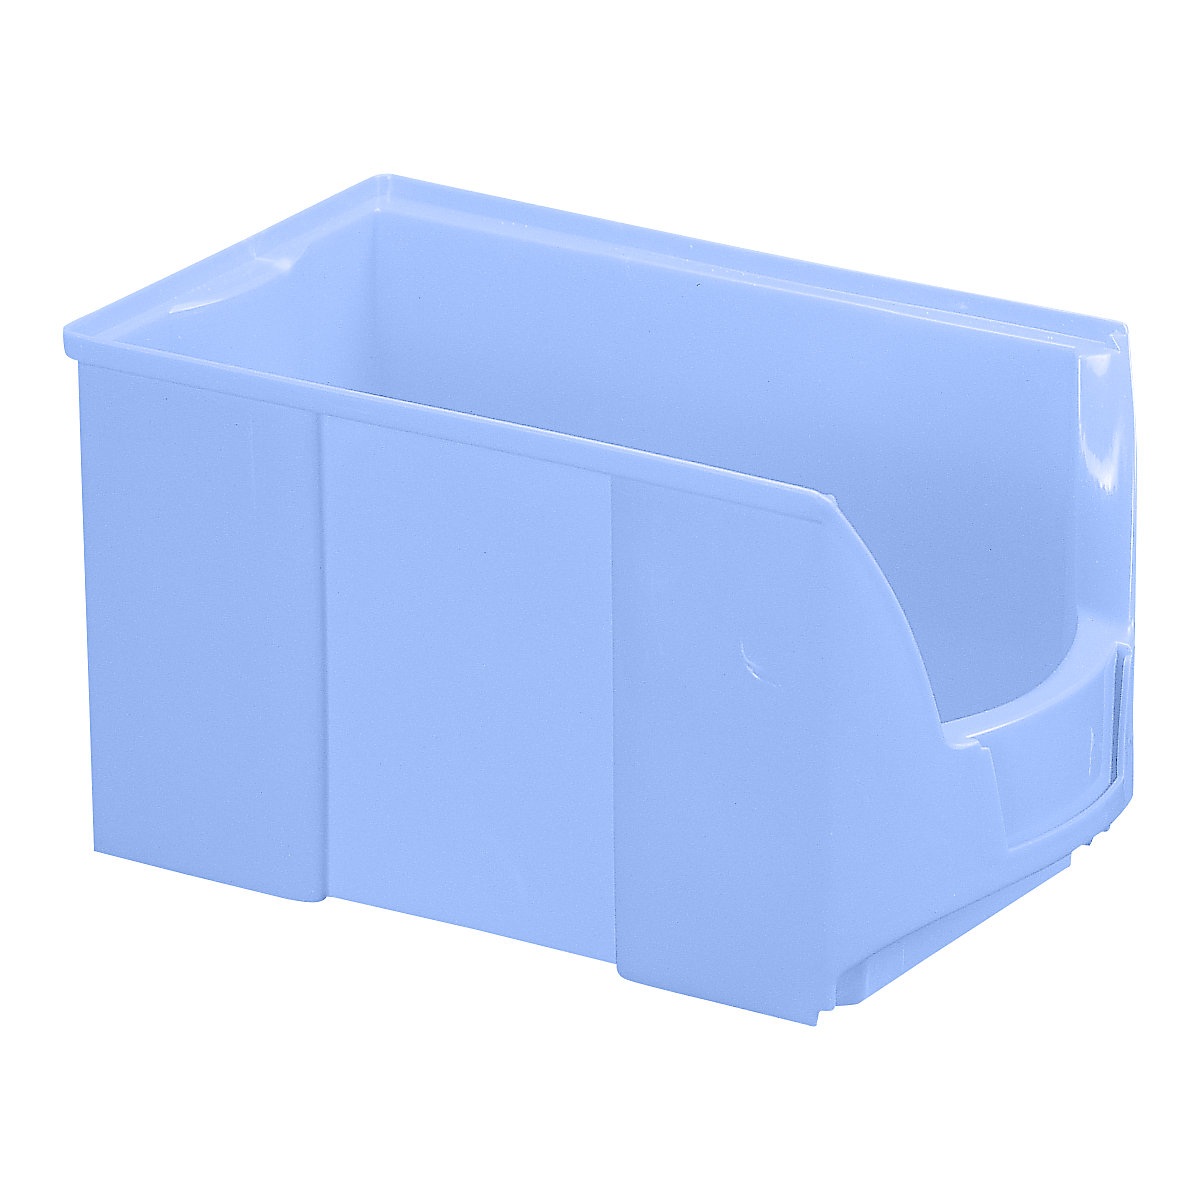 FUTURA-Sichtlagerkasten aus Polyethylen, LxBxH 360 x 208 x 201 mm, VE 8 Stk, blau-16